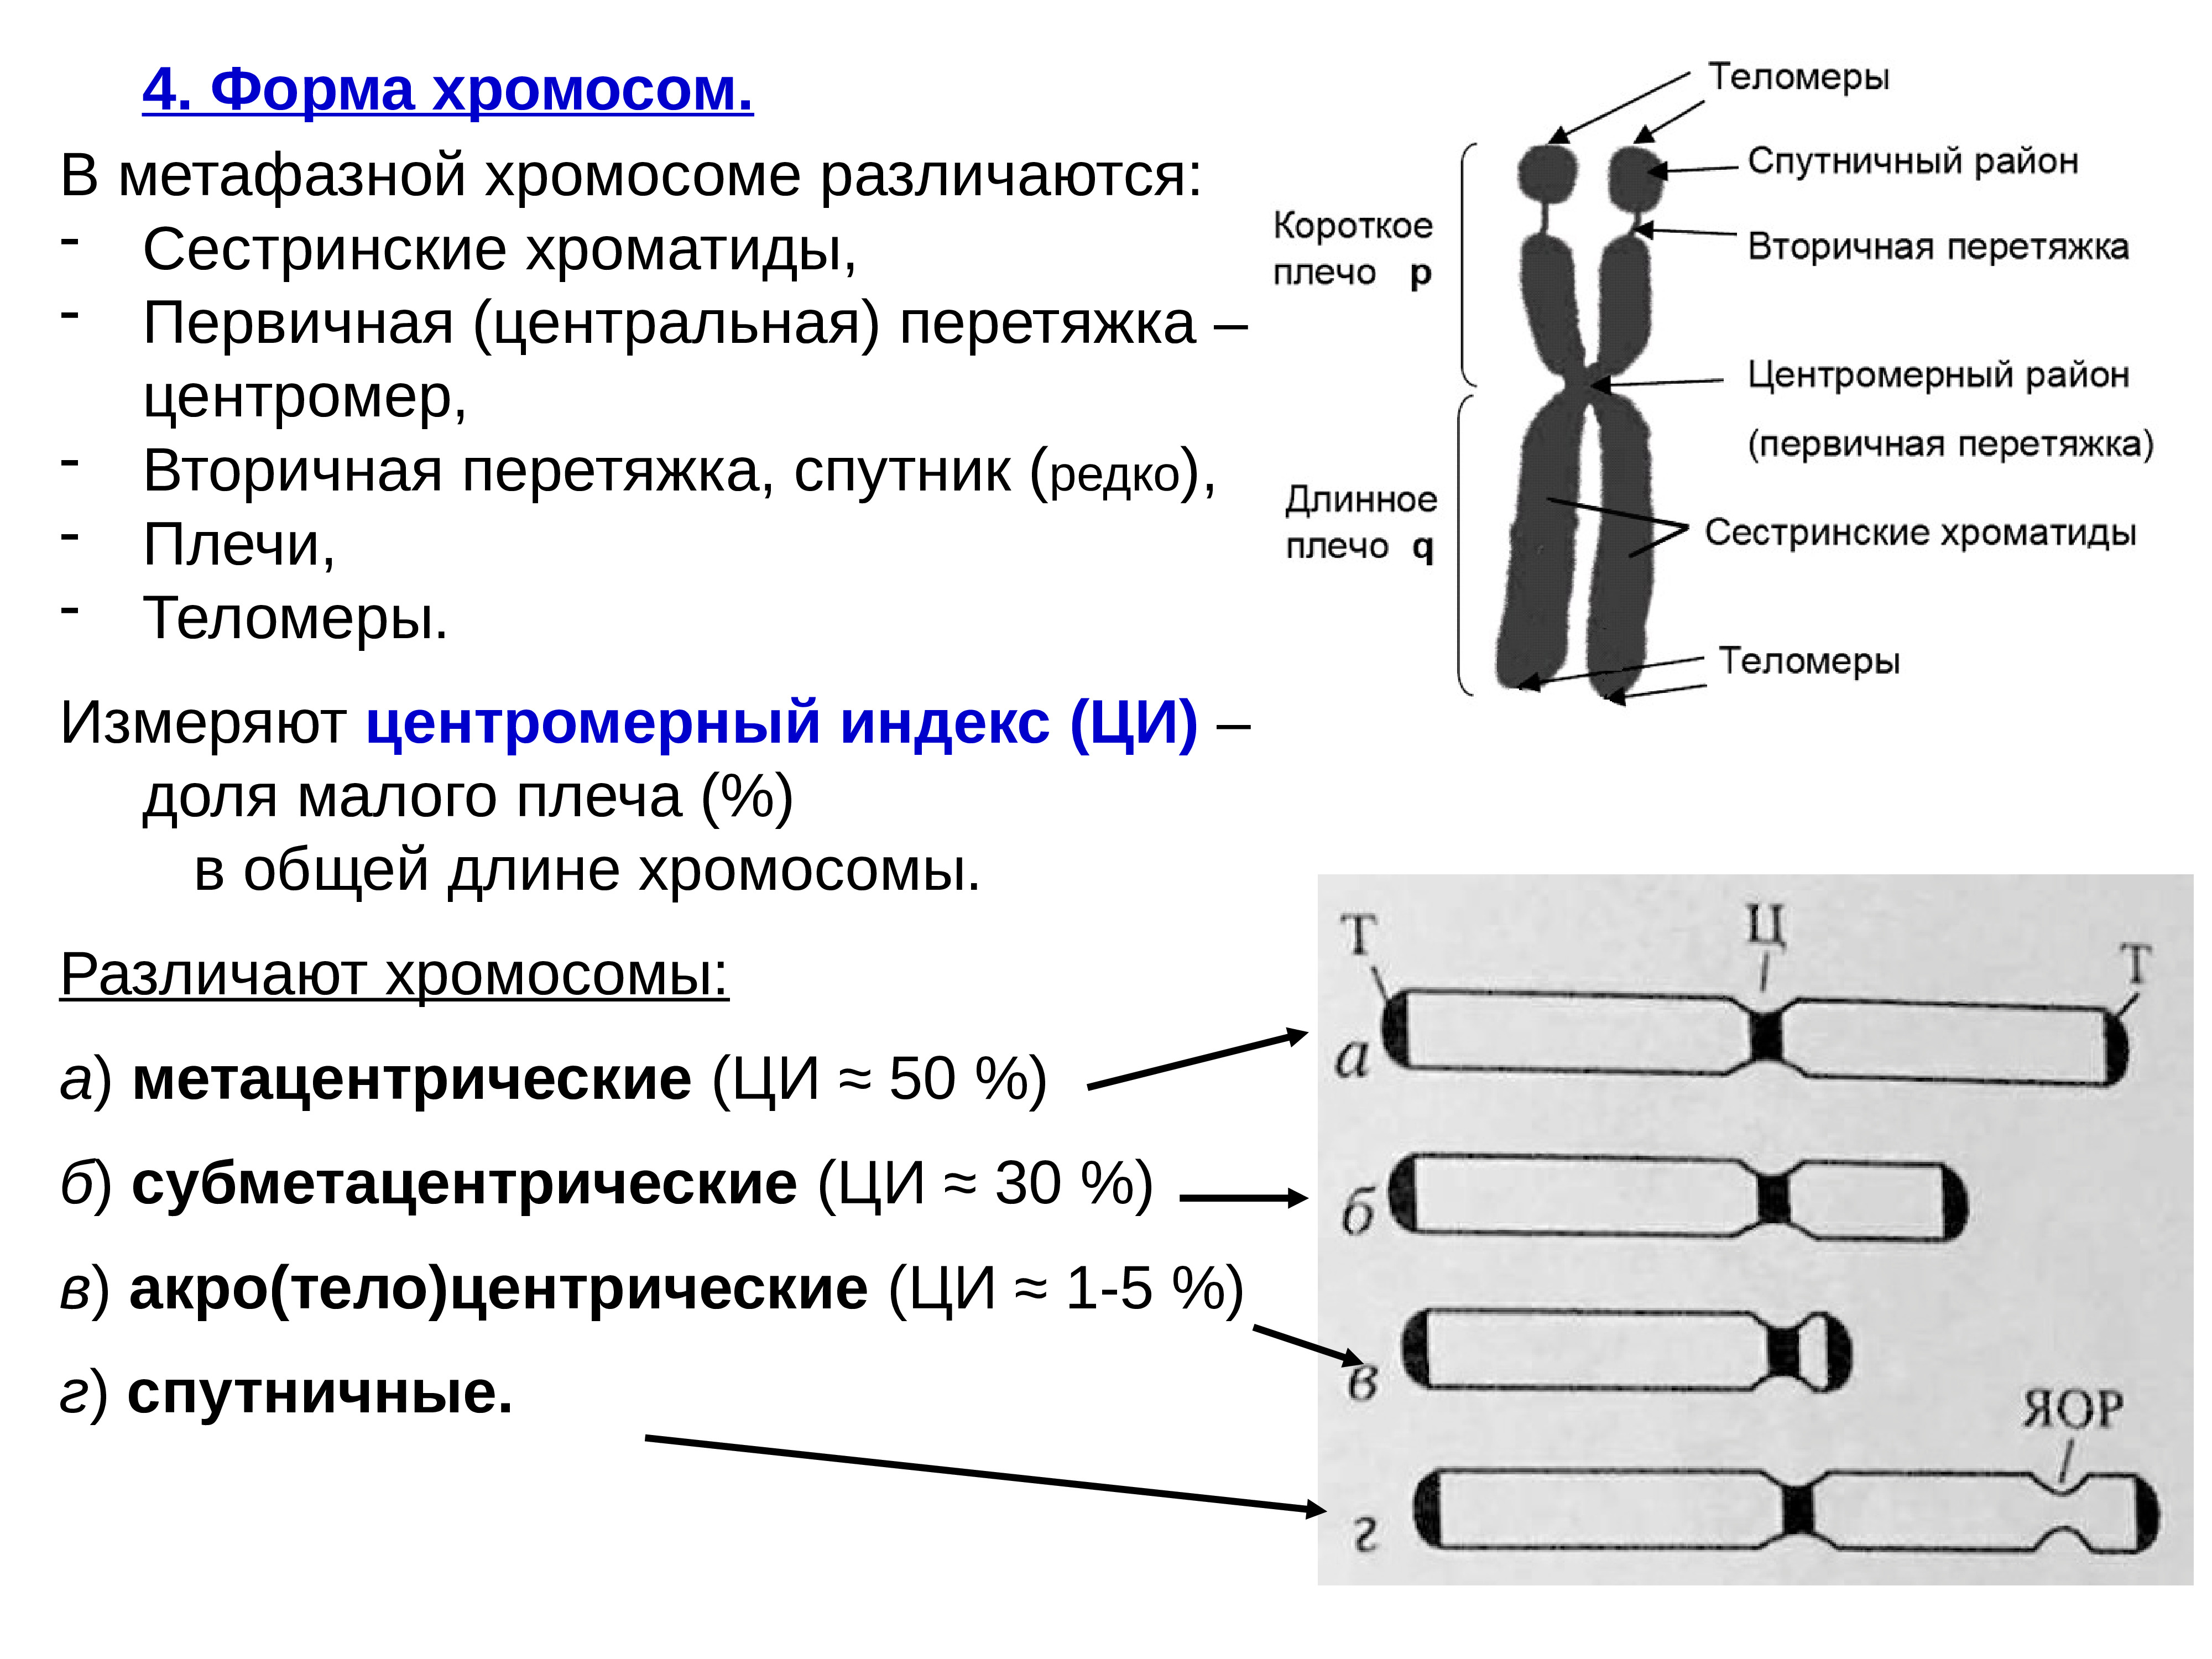 Назовите число хромосом. Строение хромосомы первичная перетяжка. Схема строения субметацентрической хромосомы. Строение хромосомы эукариотической клетки. Типы хромосом человека первичная перетяжка.